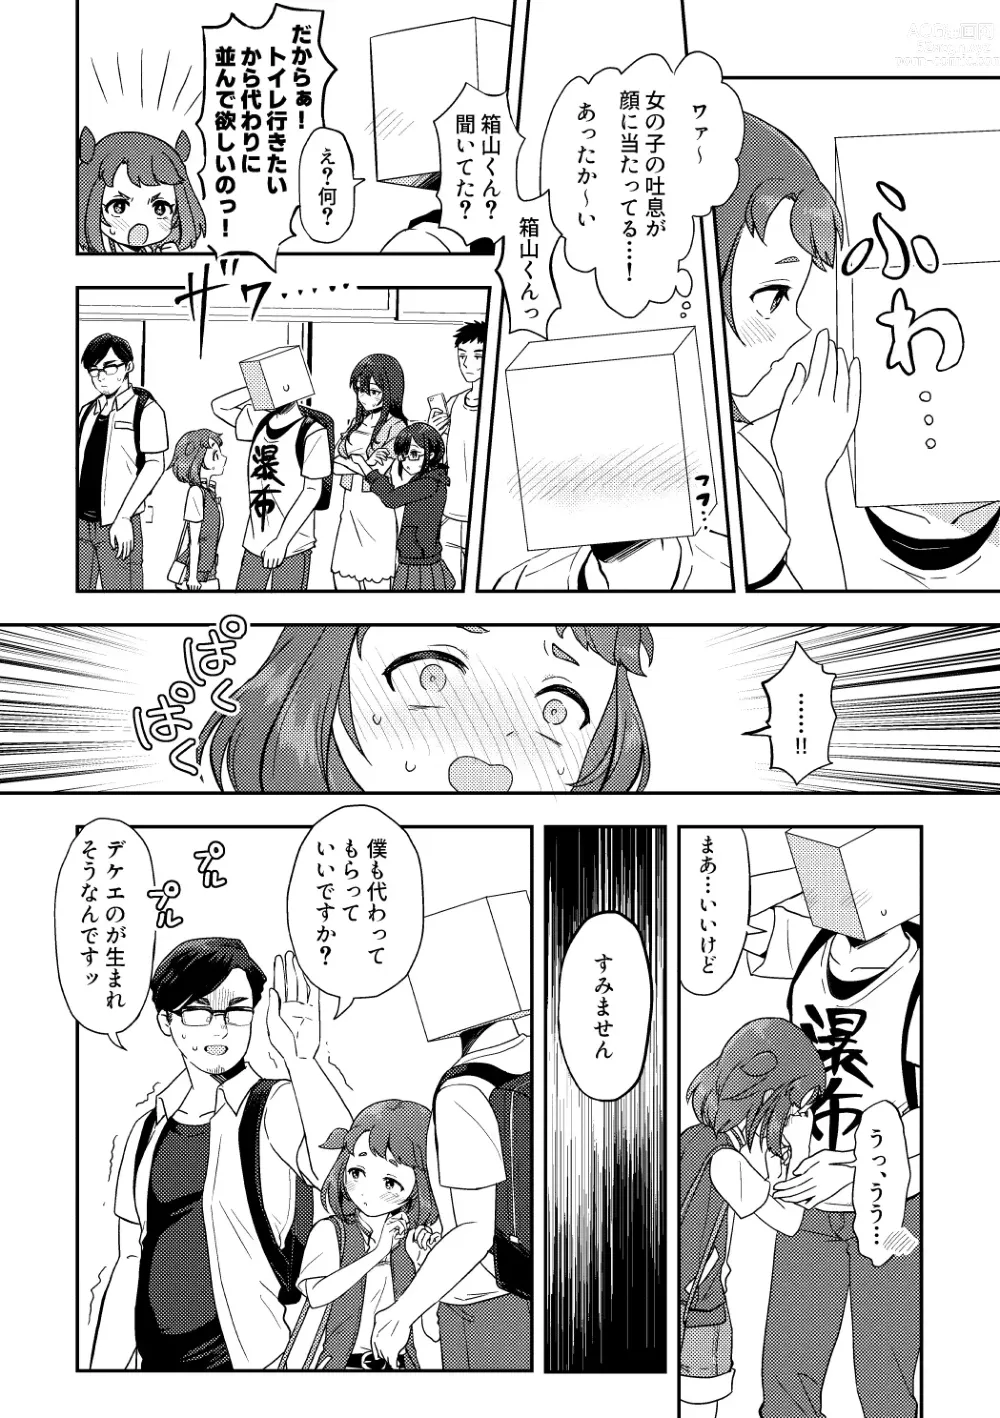 Page 7 of doujinshi Heki Yuru Futari no Senshi Hen